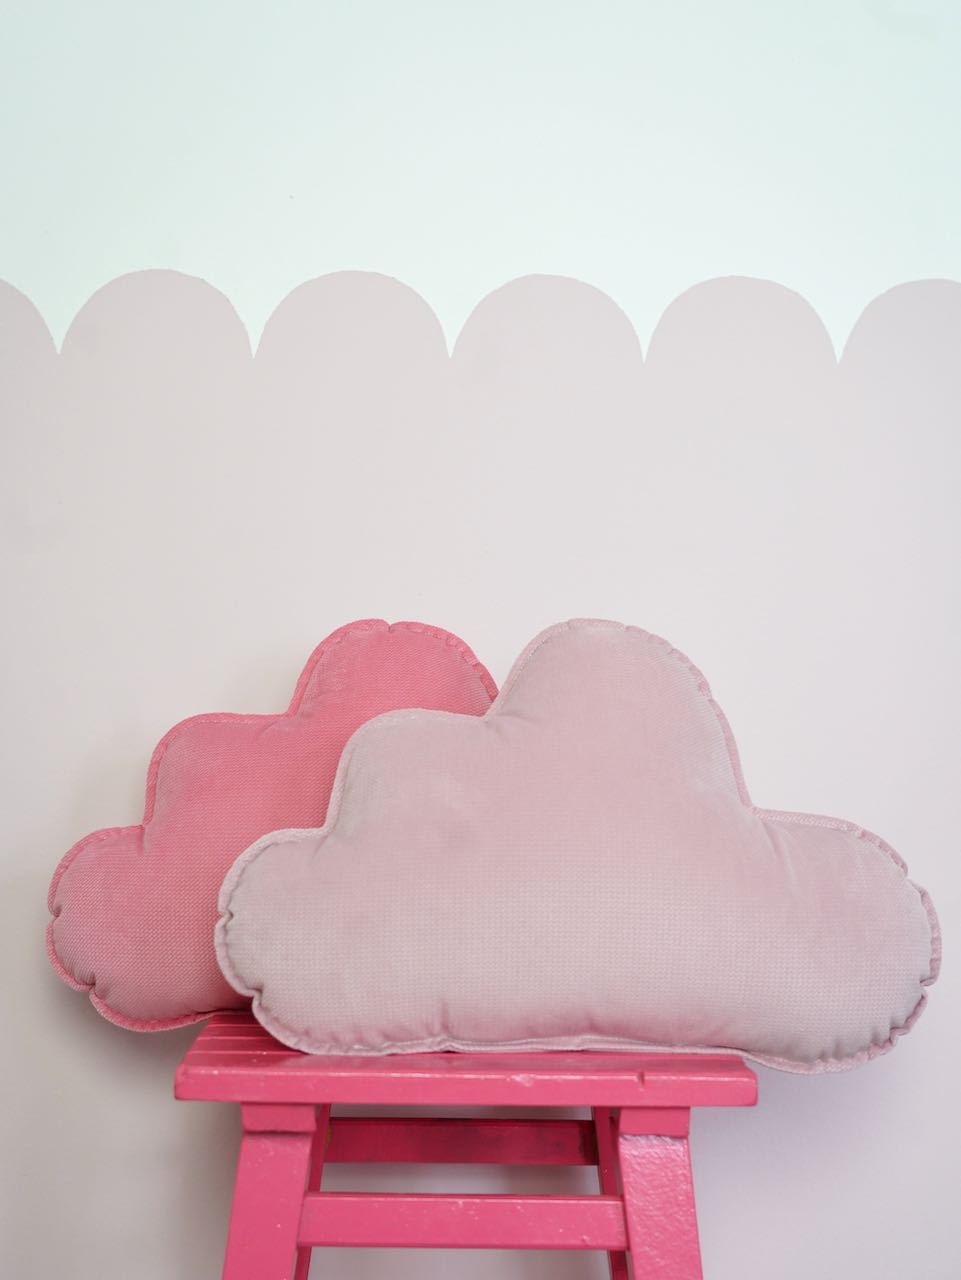 Velvet "Soft Pink" Cloud Pillow